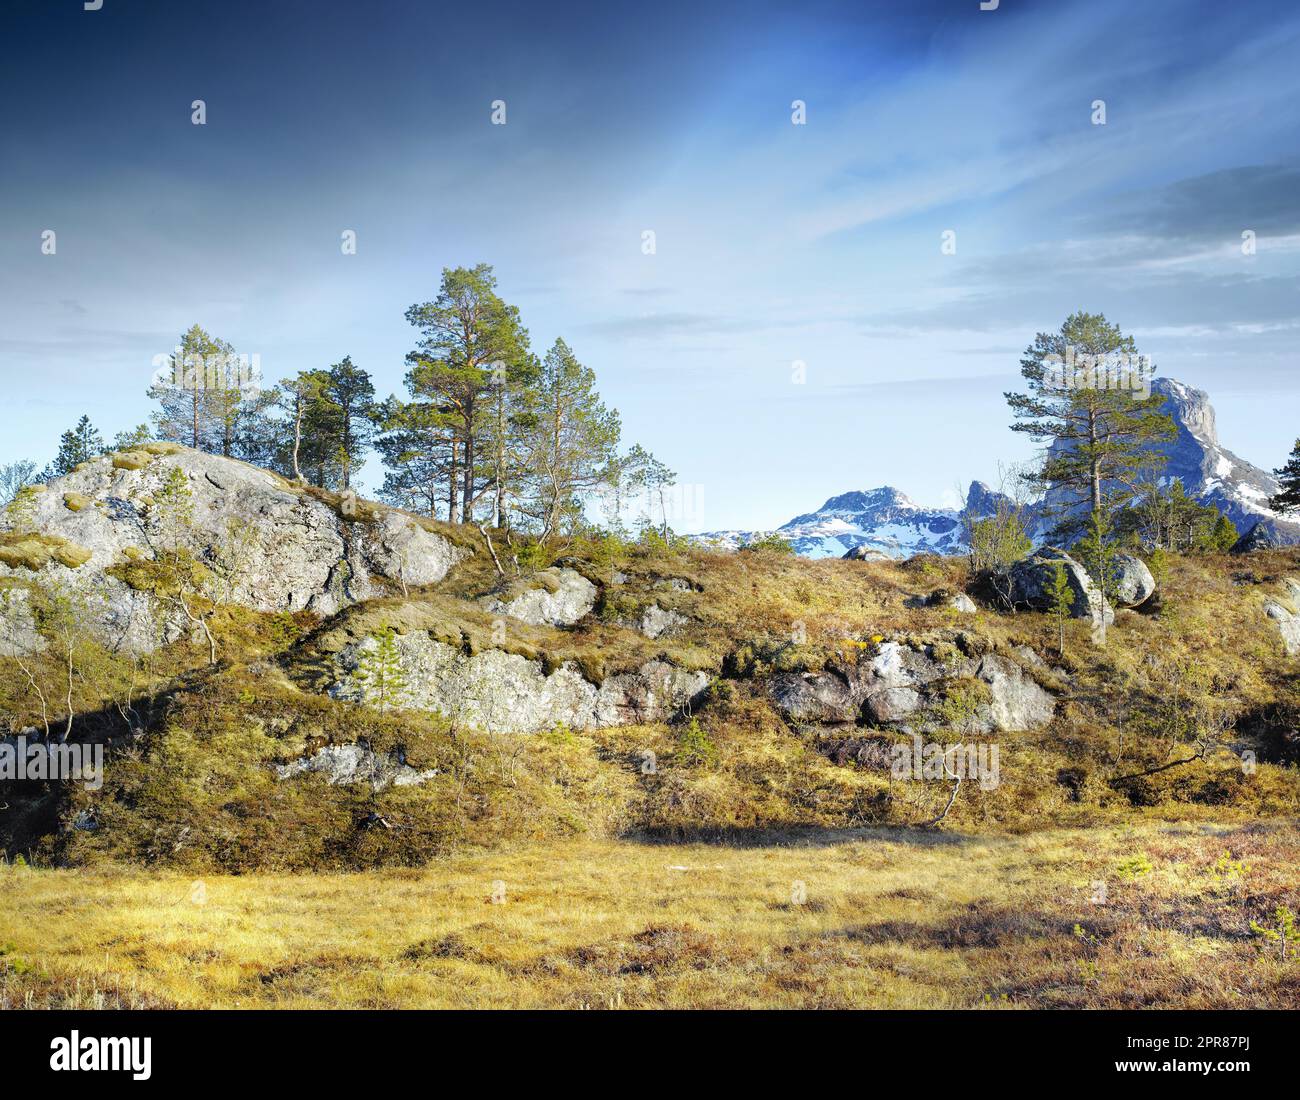 Un paesaggio di montagna con alberi e erba bruna che cresce all'aperto in una giornata invernale. Atterra con piante aride o secche e una collina rocciosa con sfondo blu nuvoloso Foto Stock